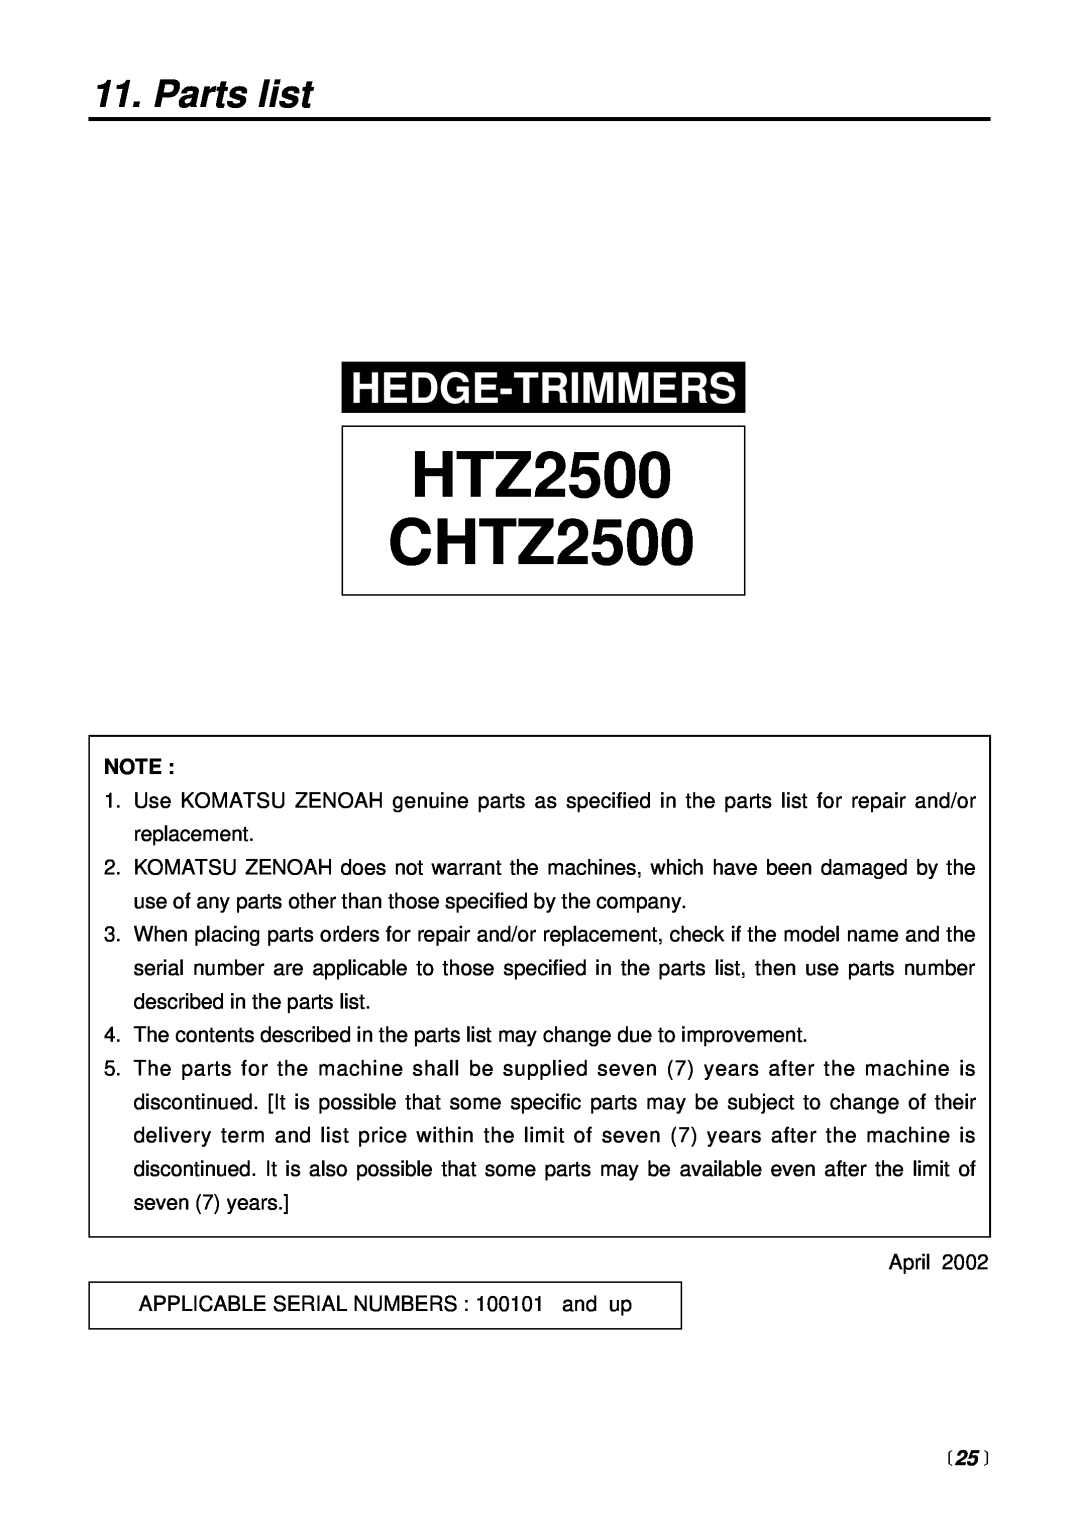 RedMax manual Parts list,  25 , HTZ2500 CHTZ2500, Hedge-Trimmers 